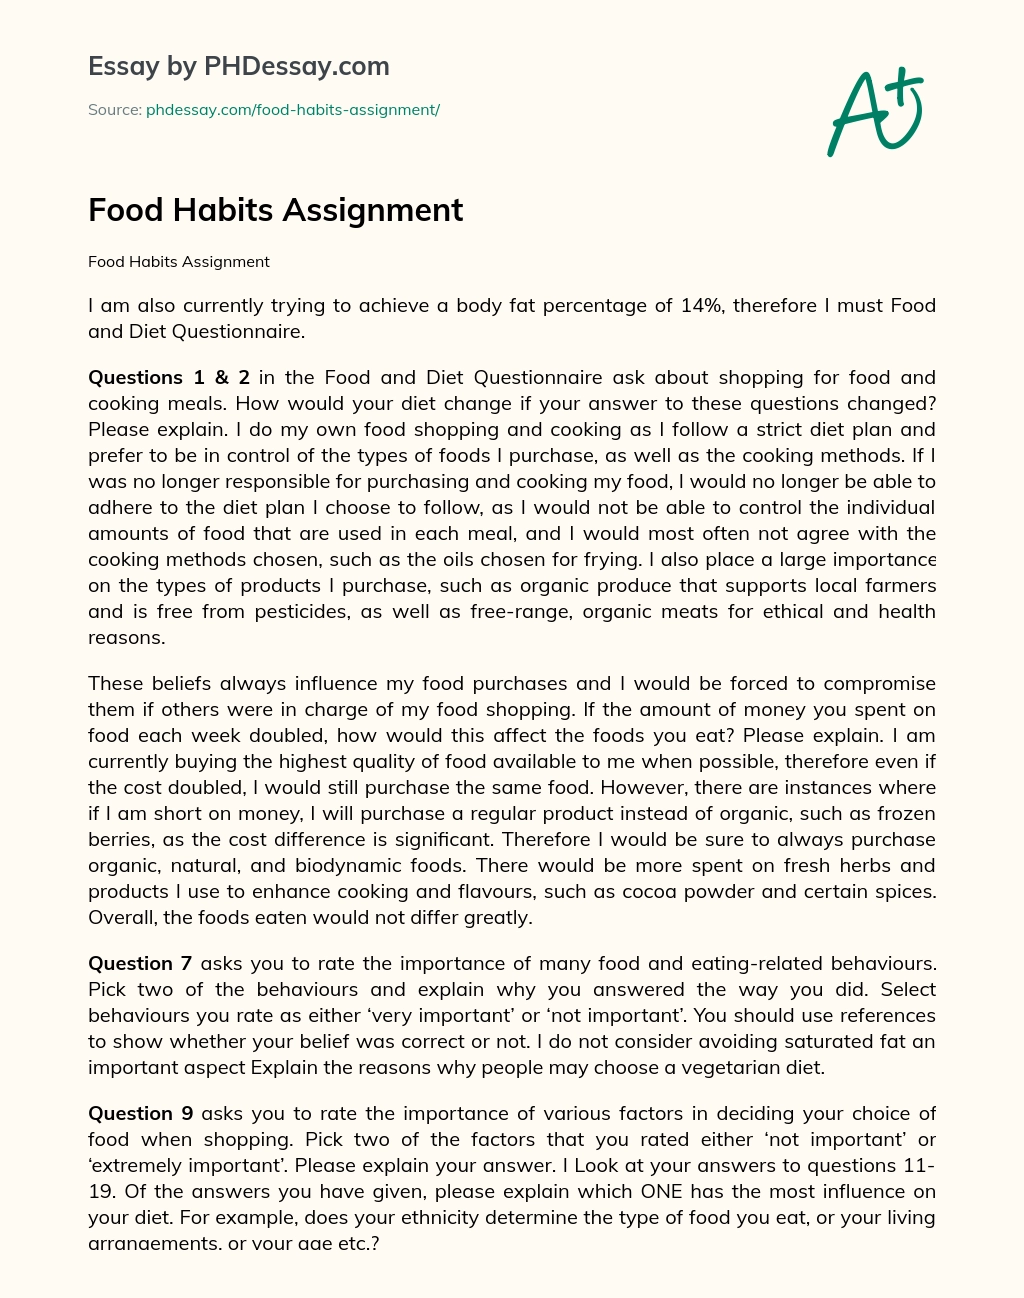 Food Habits Assignment essay